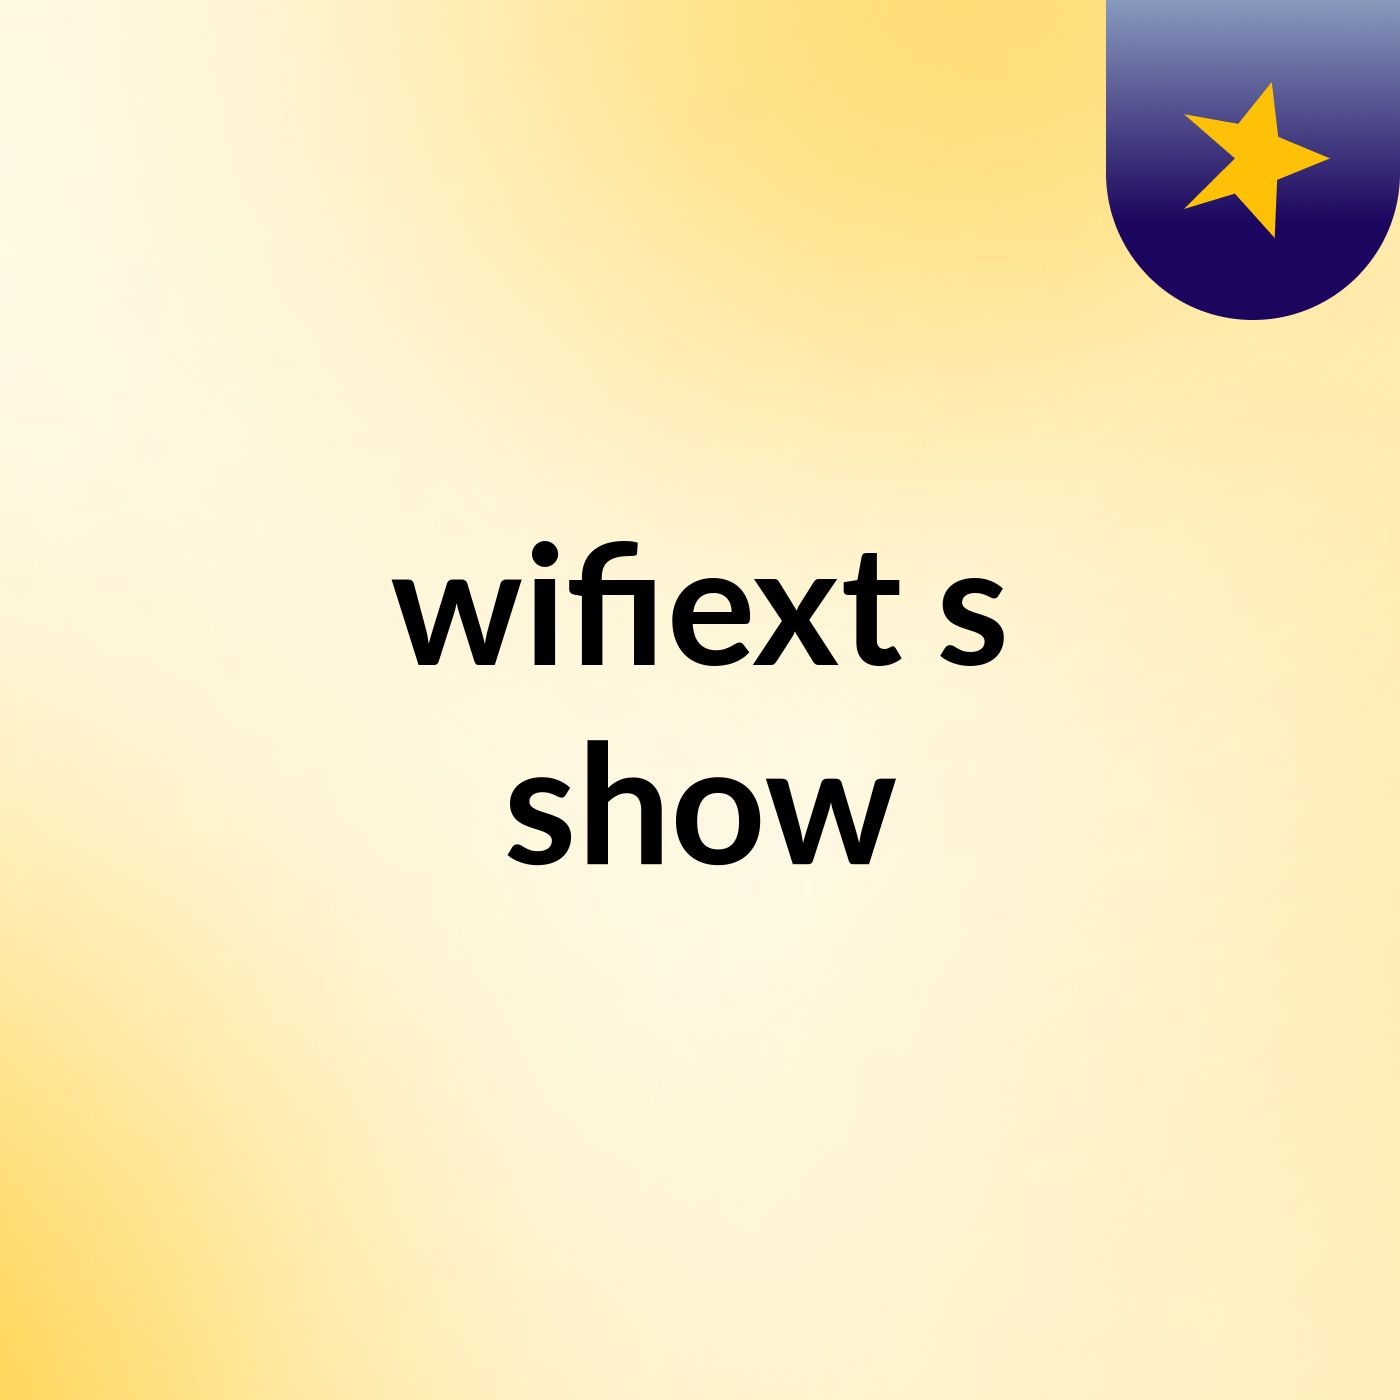 wifiext's show